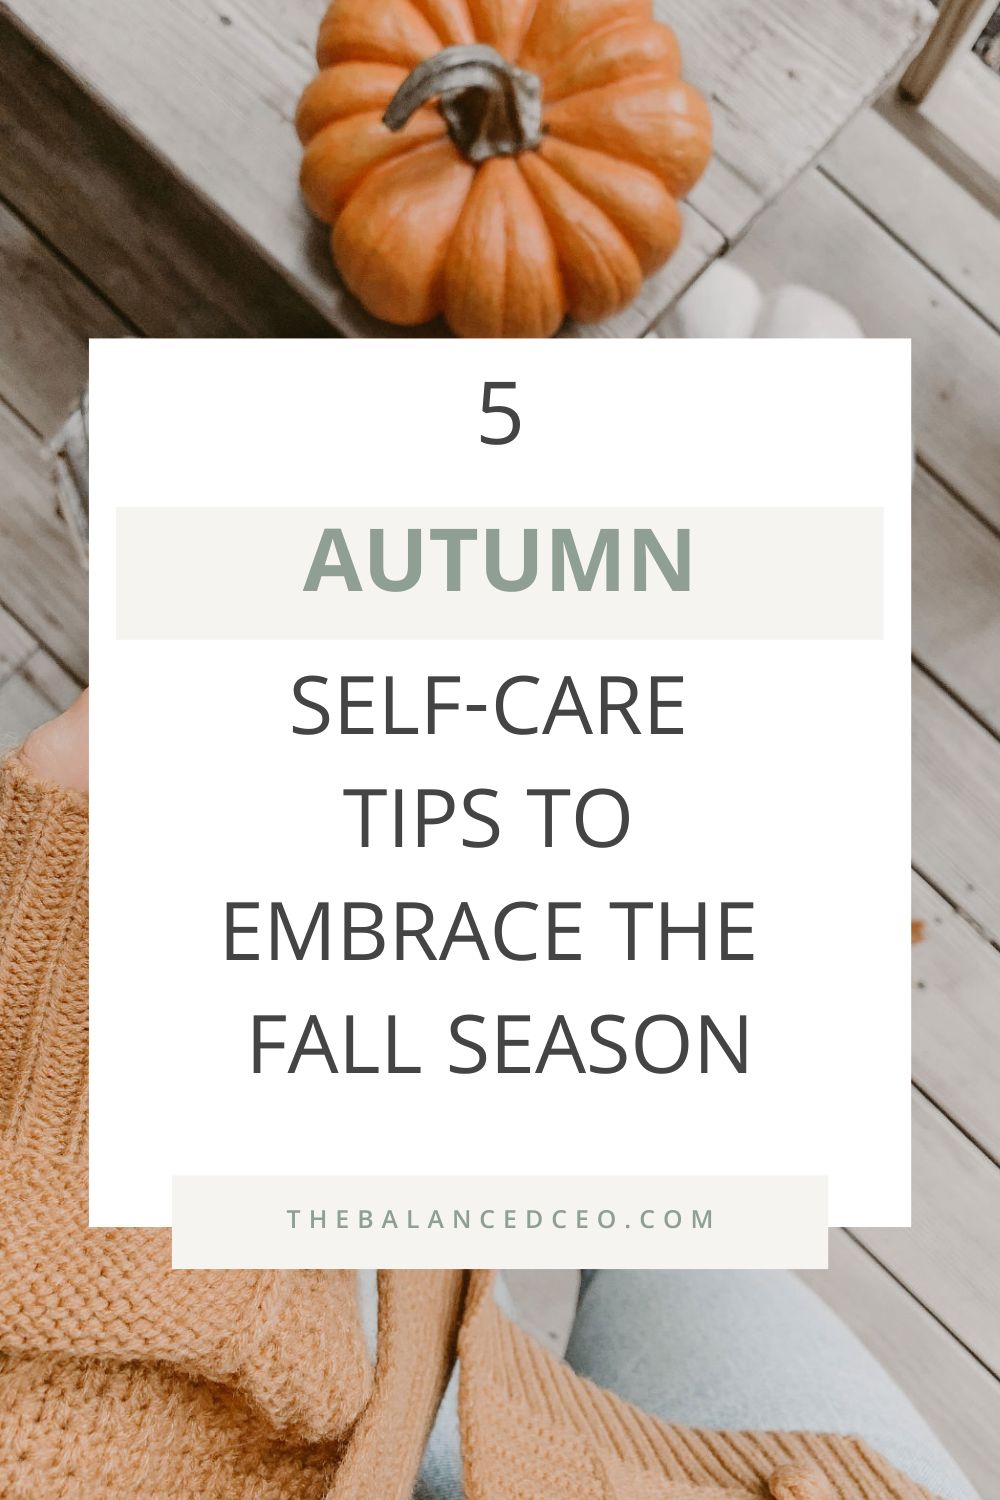 5 Autumn Self-Care Tips to Embrace the Fall Season